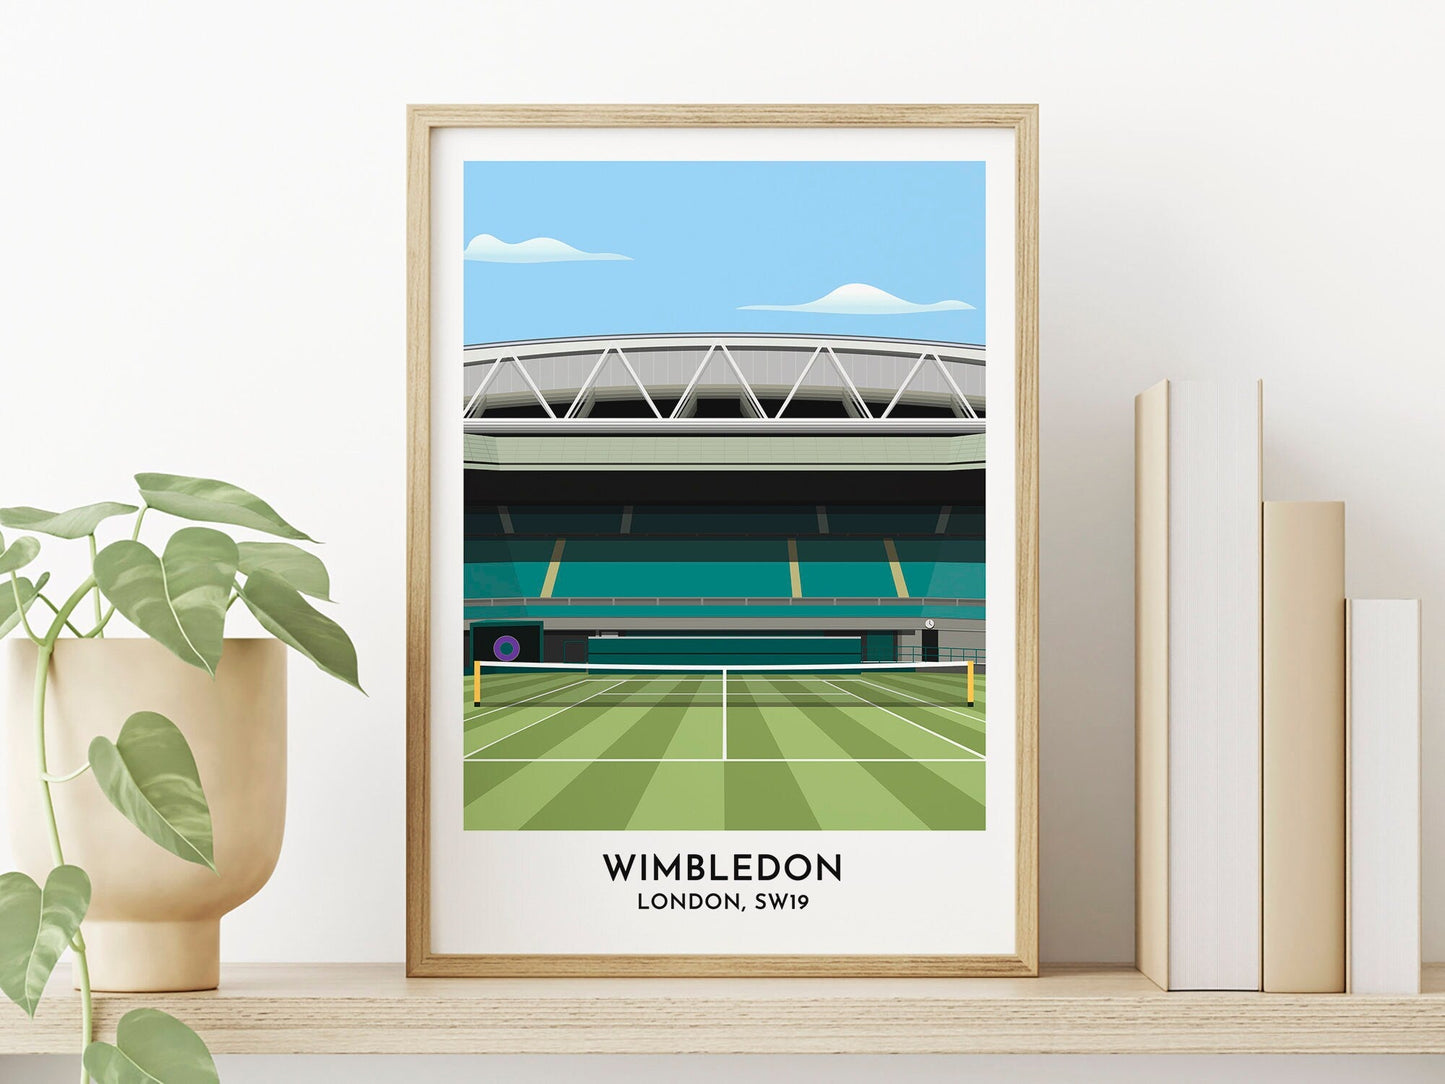 Wimbledon Tennis - Centre Court Art Print - Tennis Fan Gift Print - Birthday Gift for Her Him - Turf Football Art